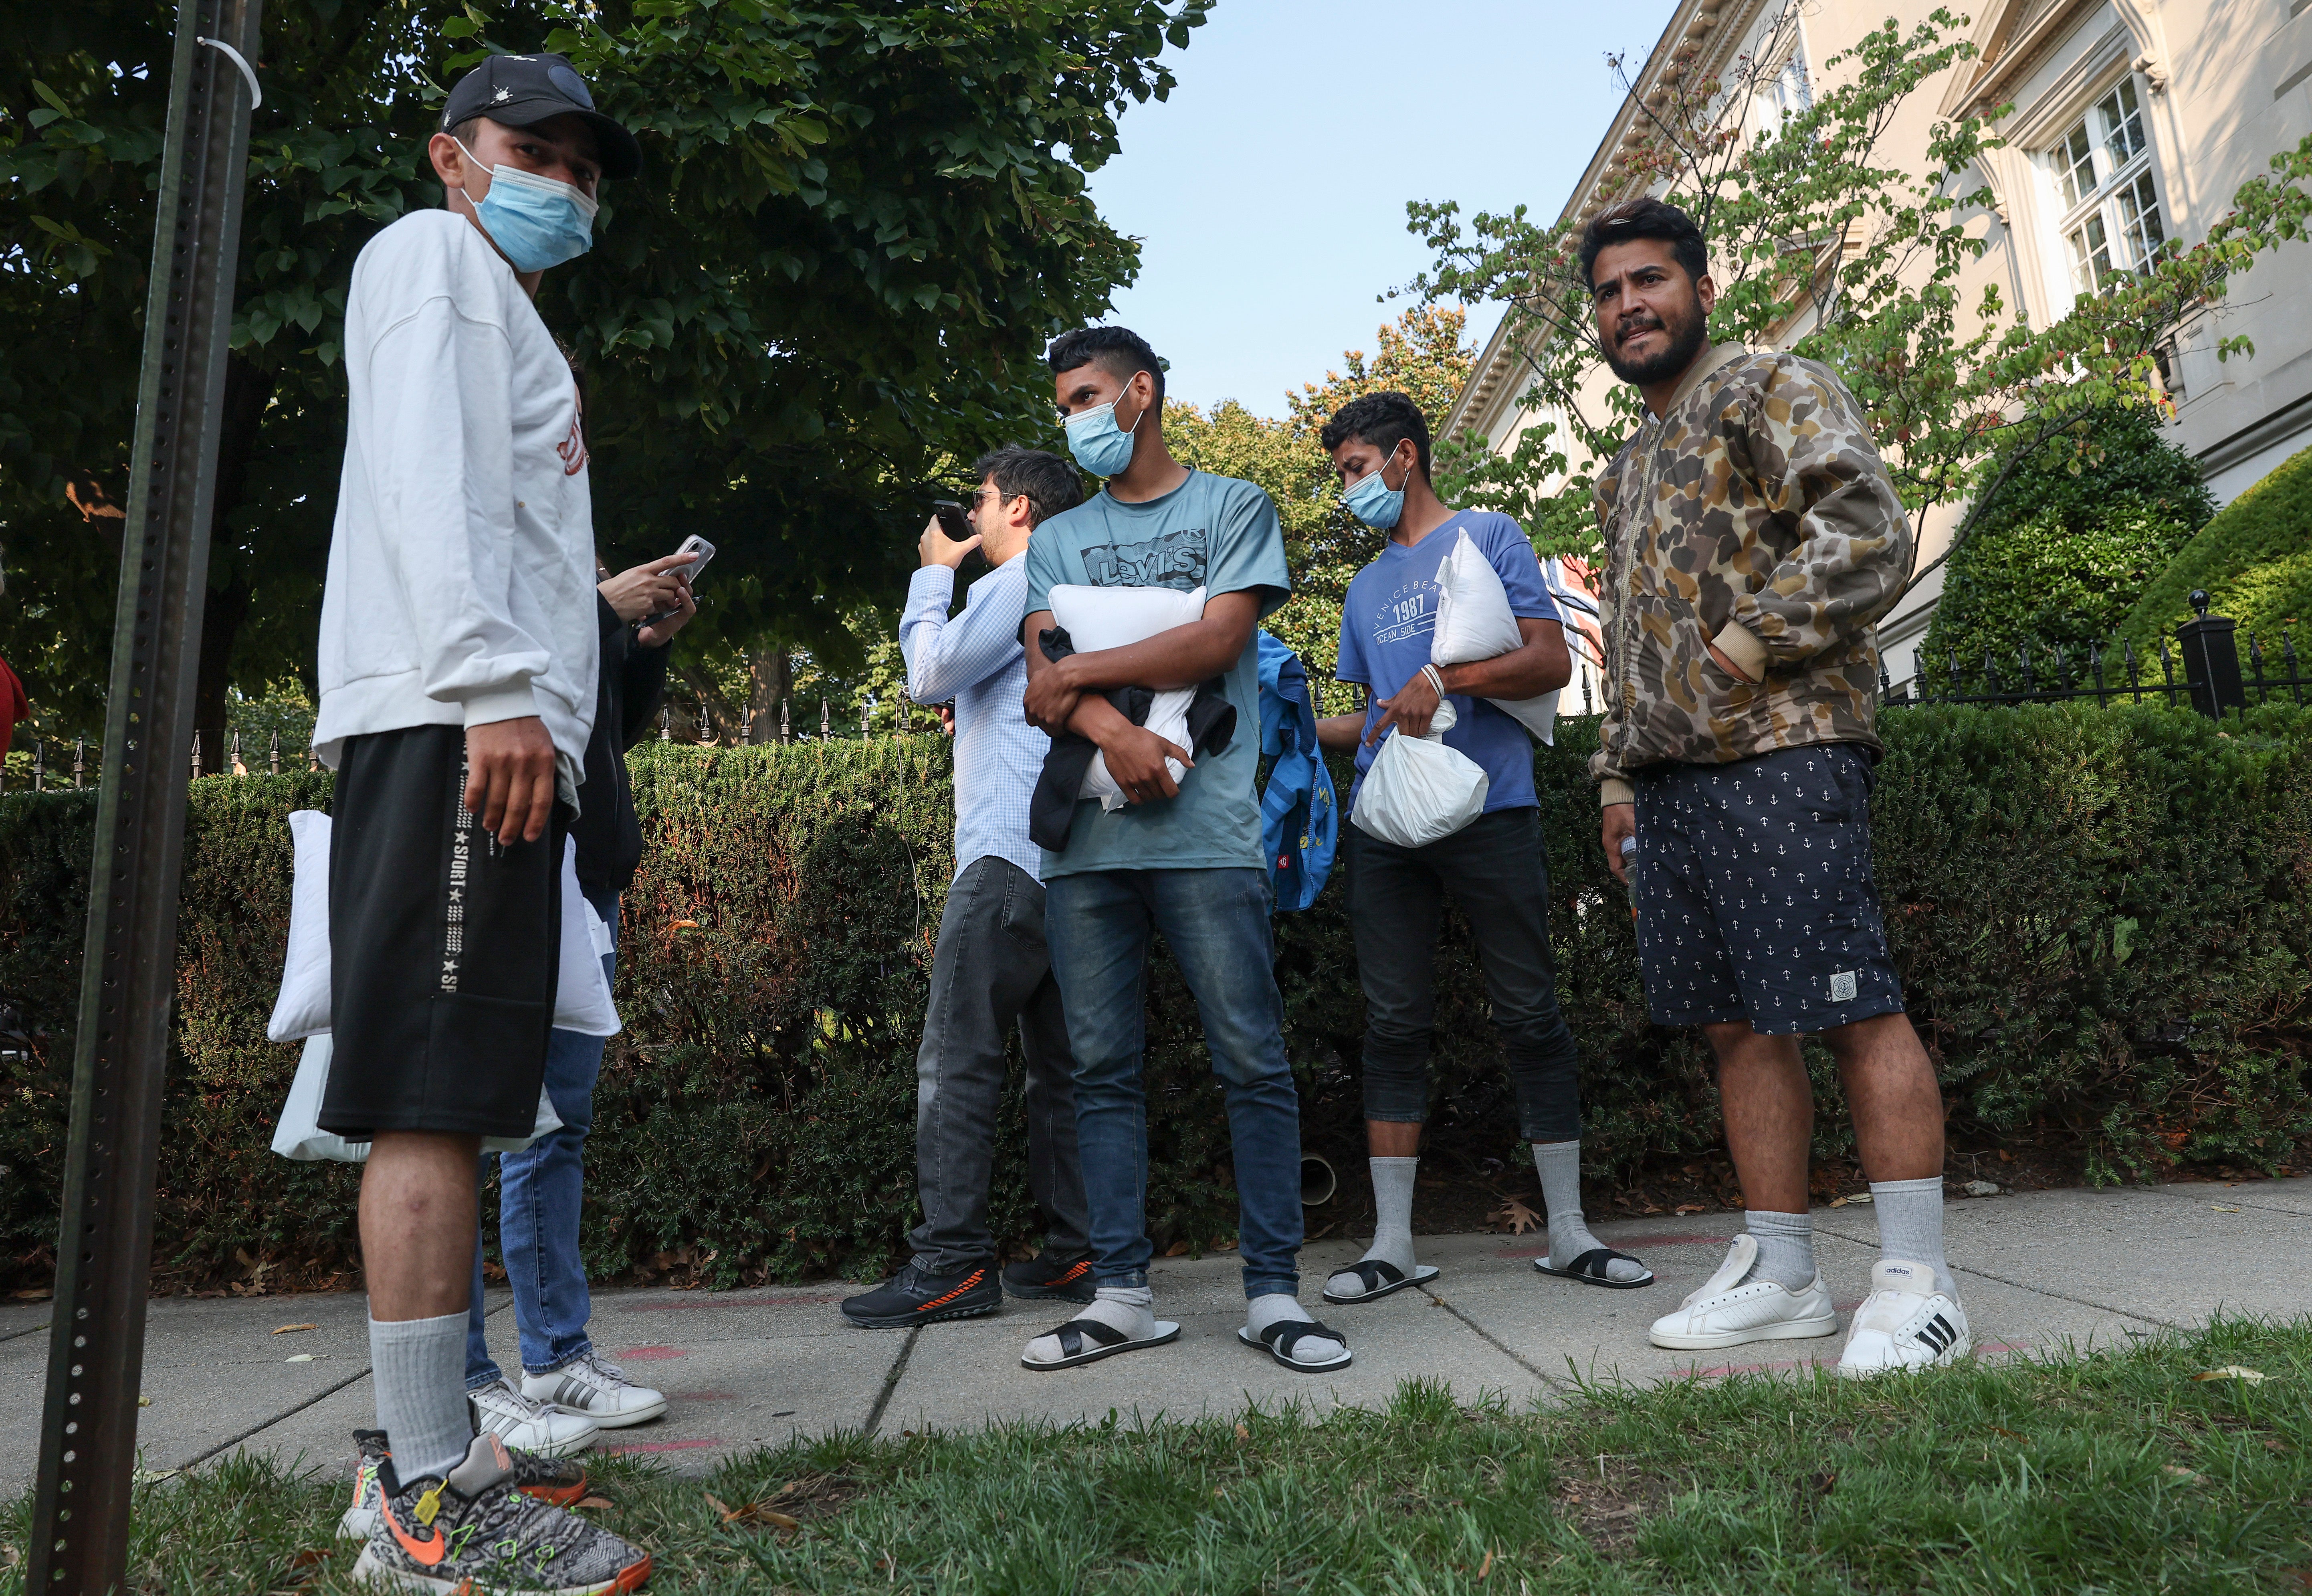 Los migrantes enviados desde Texas fueron dejados frente a la residencia de la vicepresidenta Kamala Harris en Washington, D. C. el 15 de septiembre